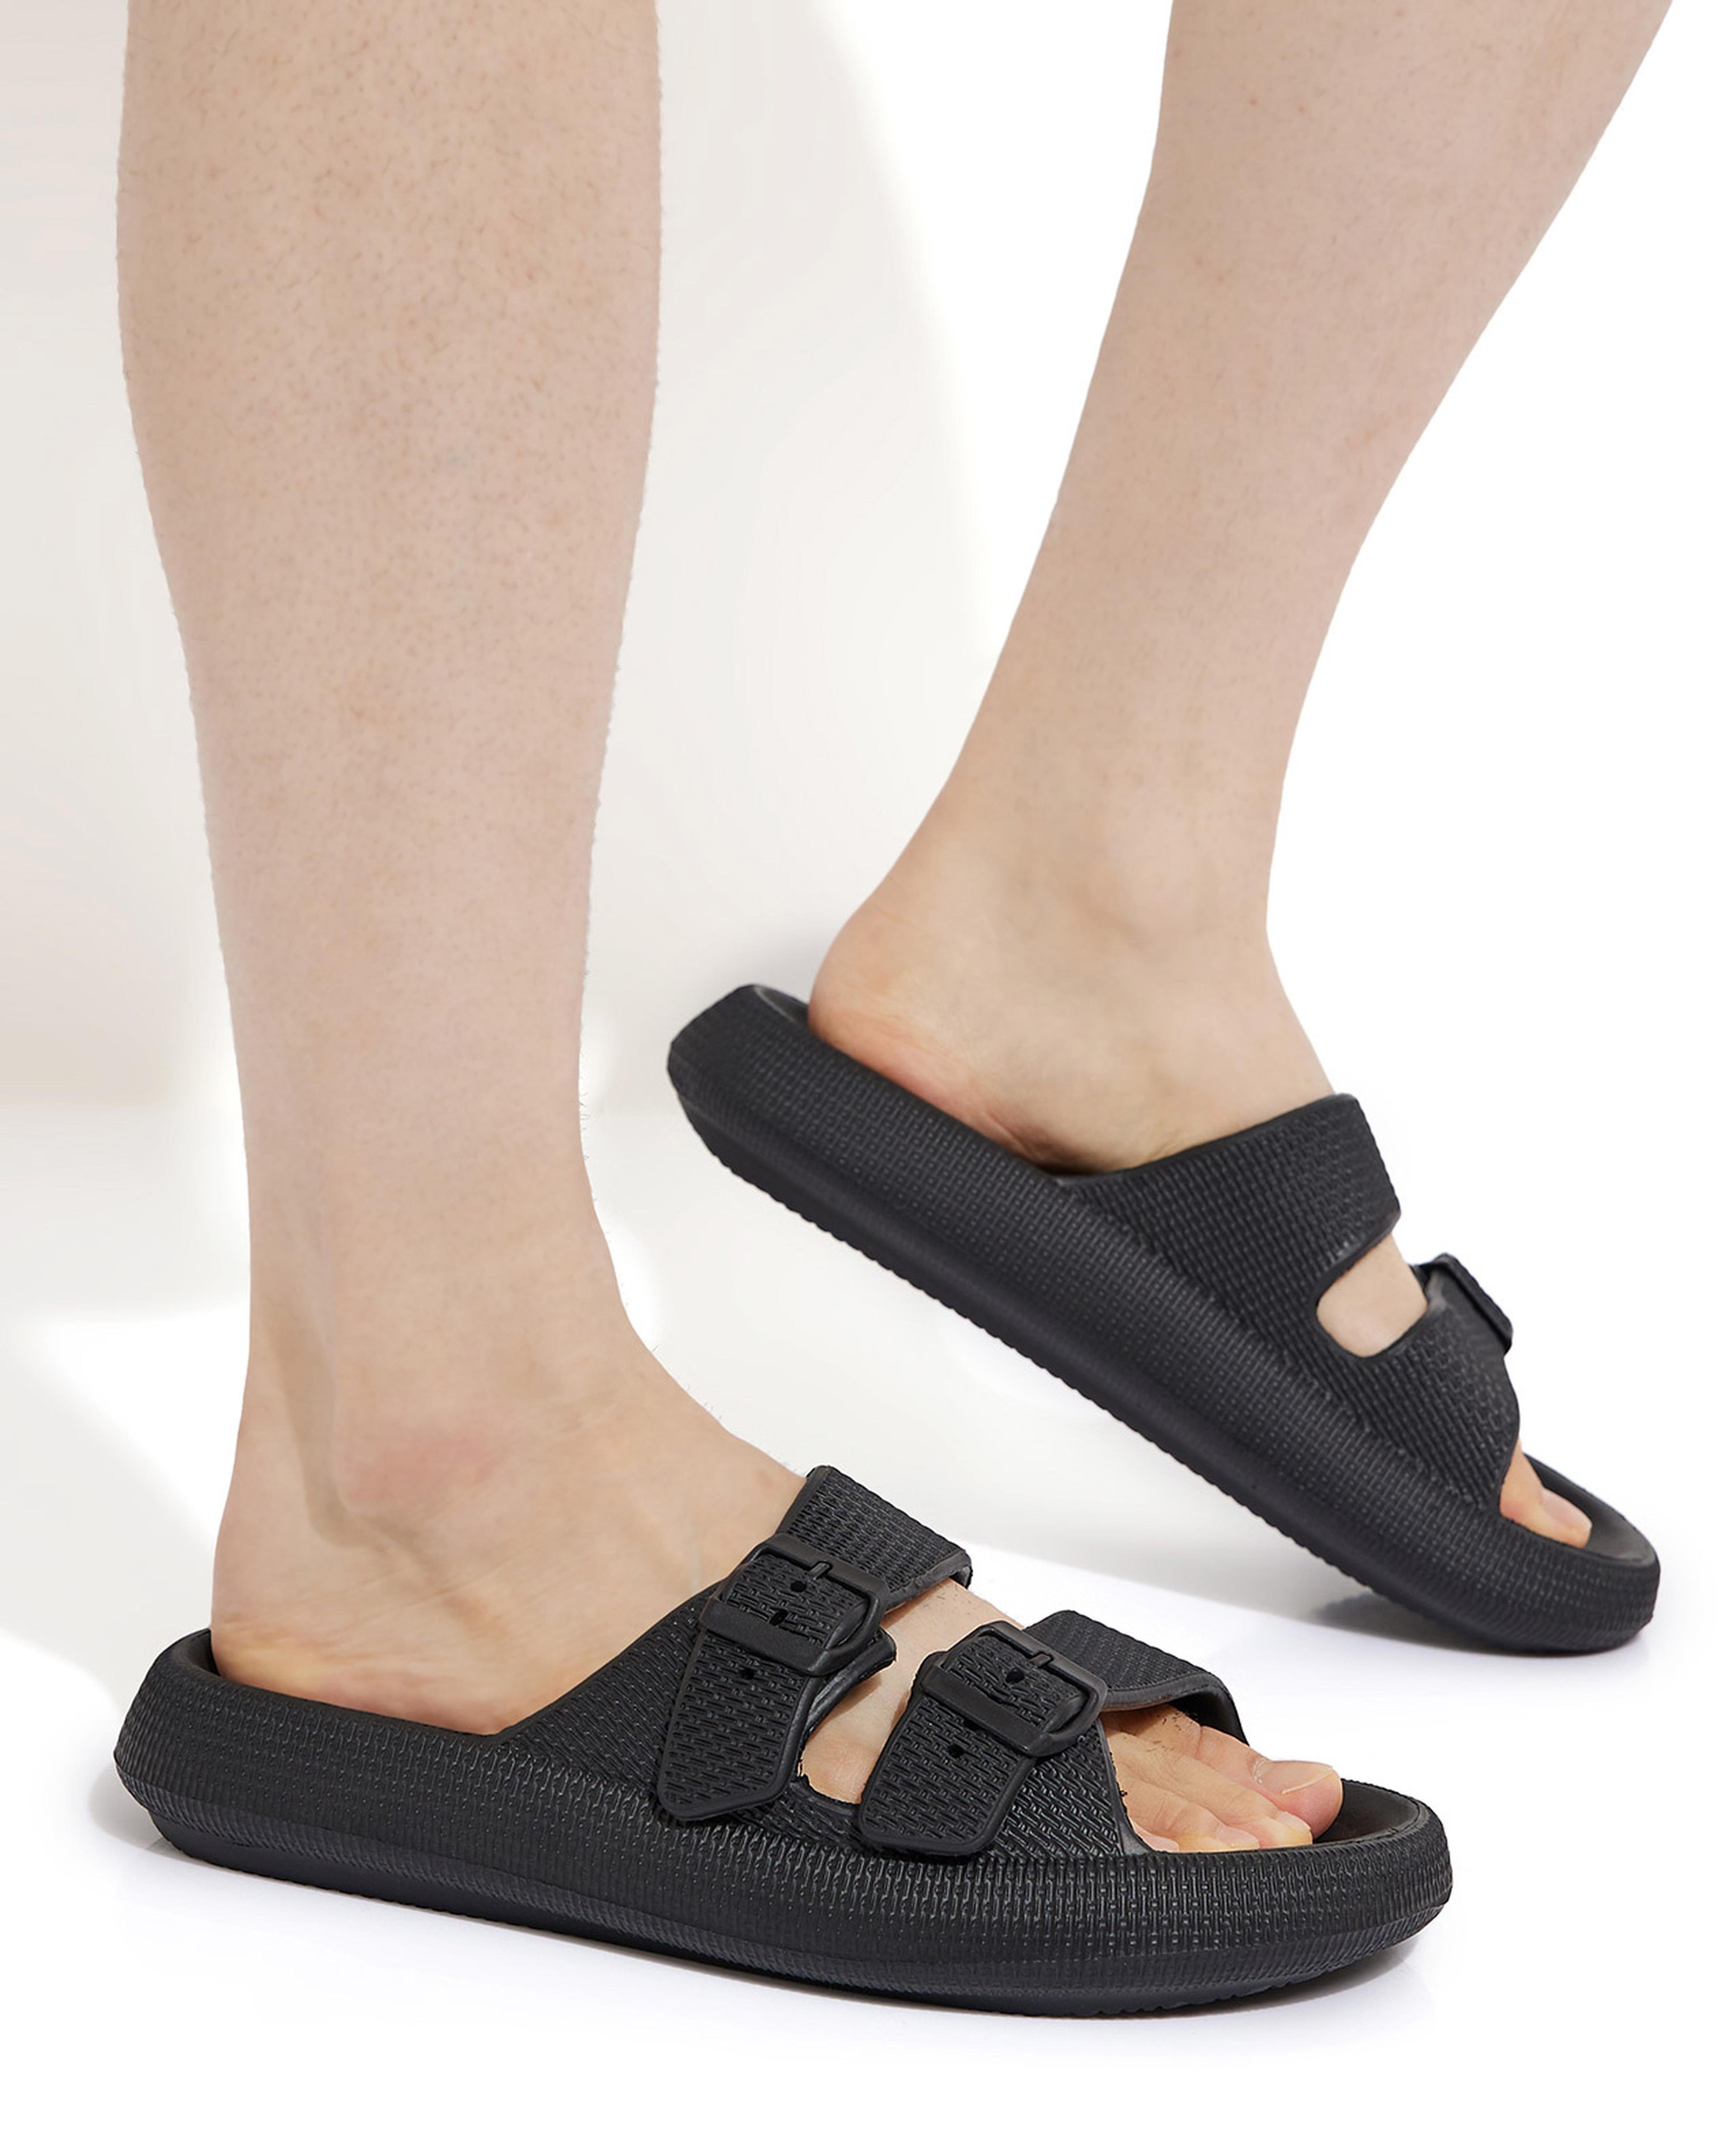 Double Strap Sandals